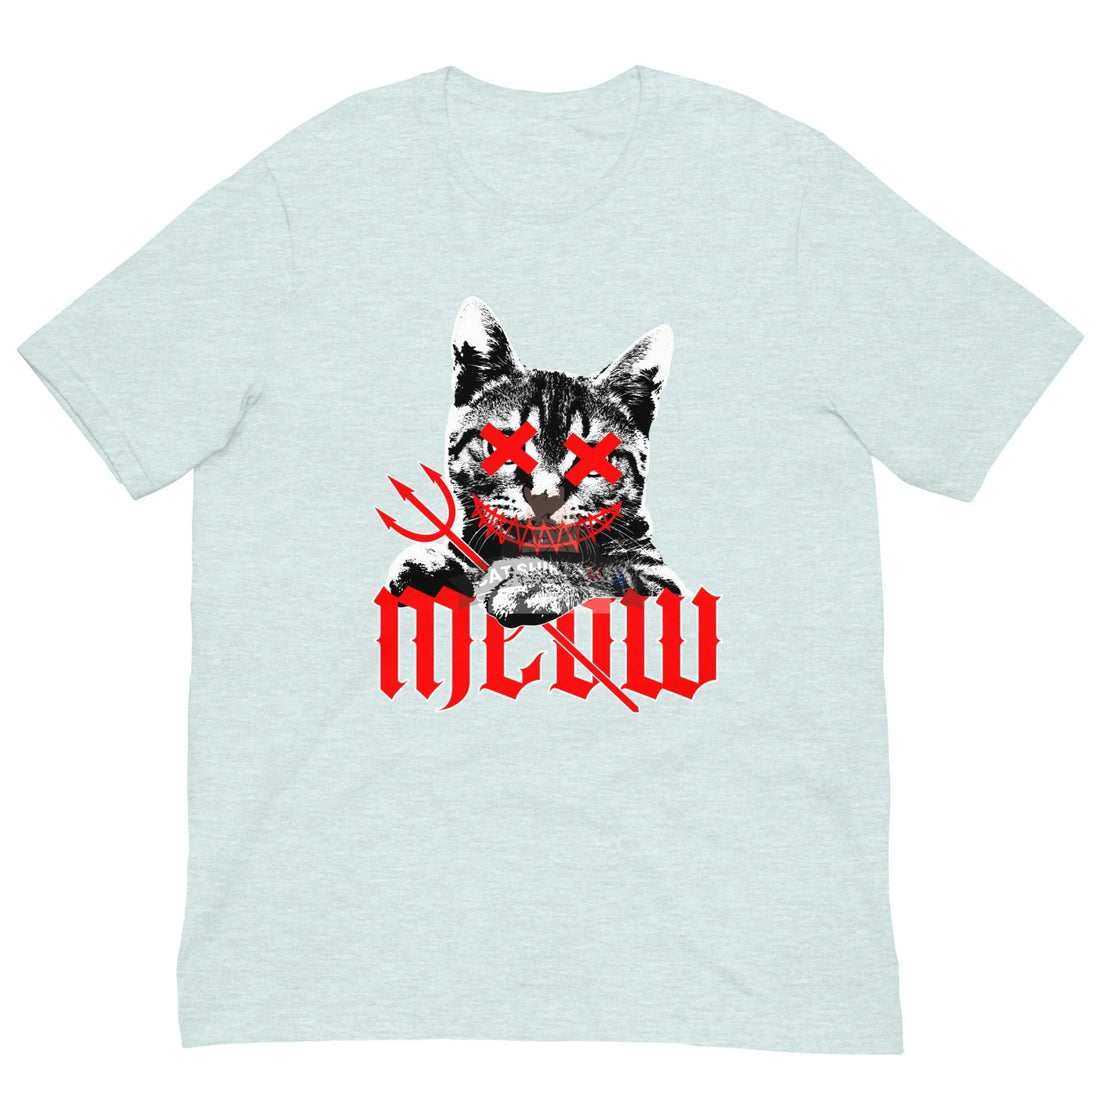 Meow Cat Shirt - Cat Shirts USA